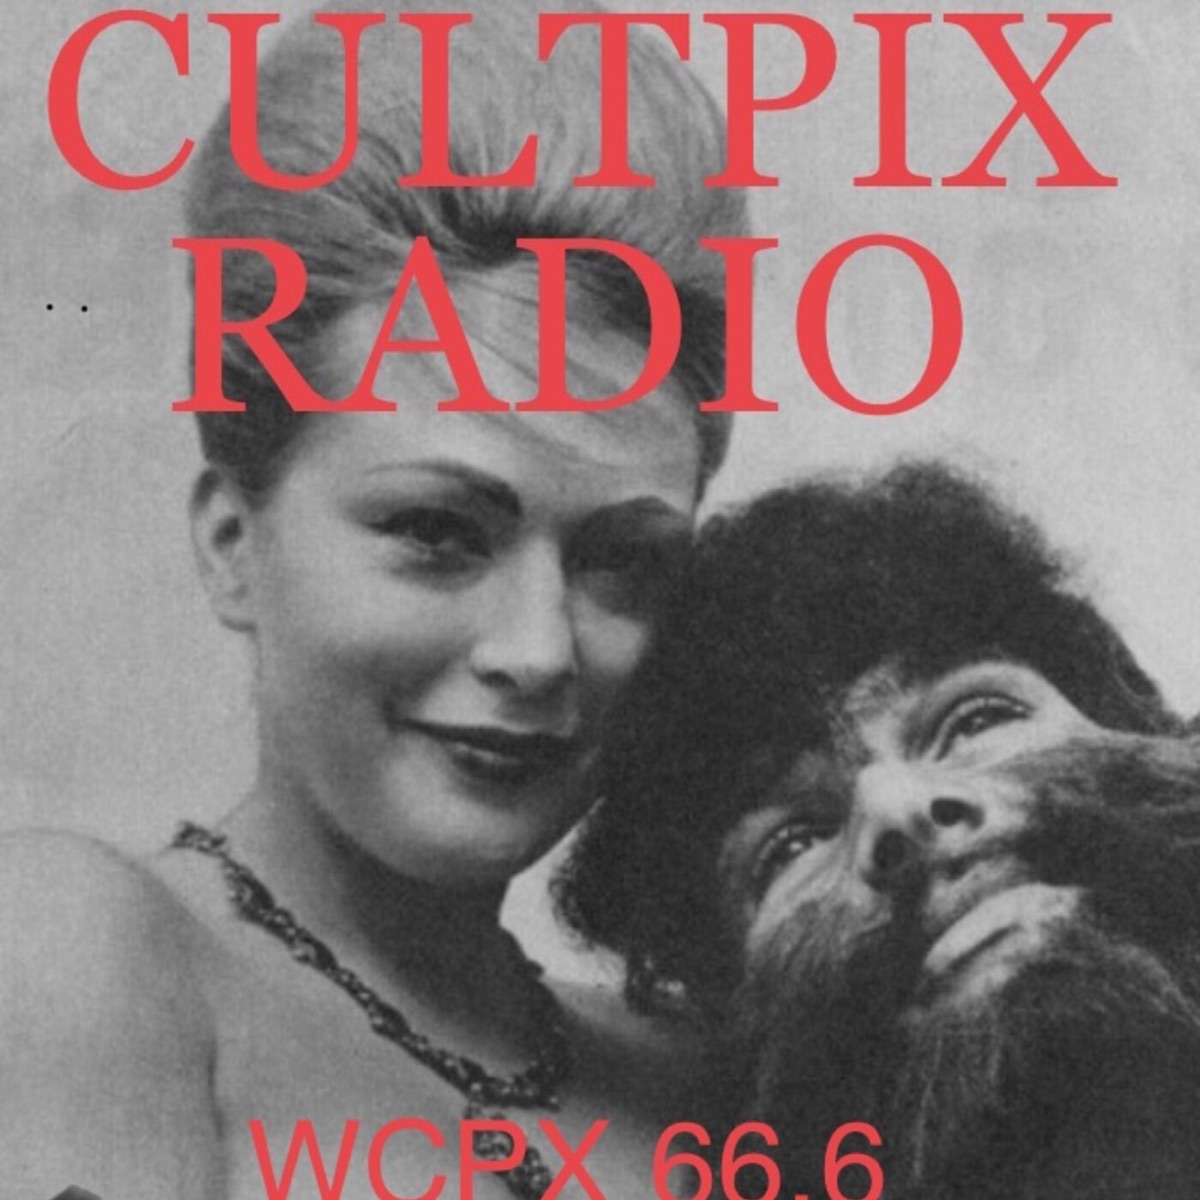 Cultpix Radio â€“ Lyssna hÃ¤r â€“ Podtail